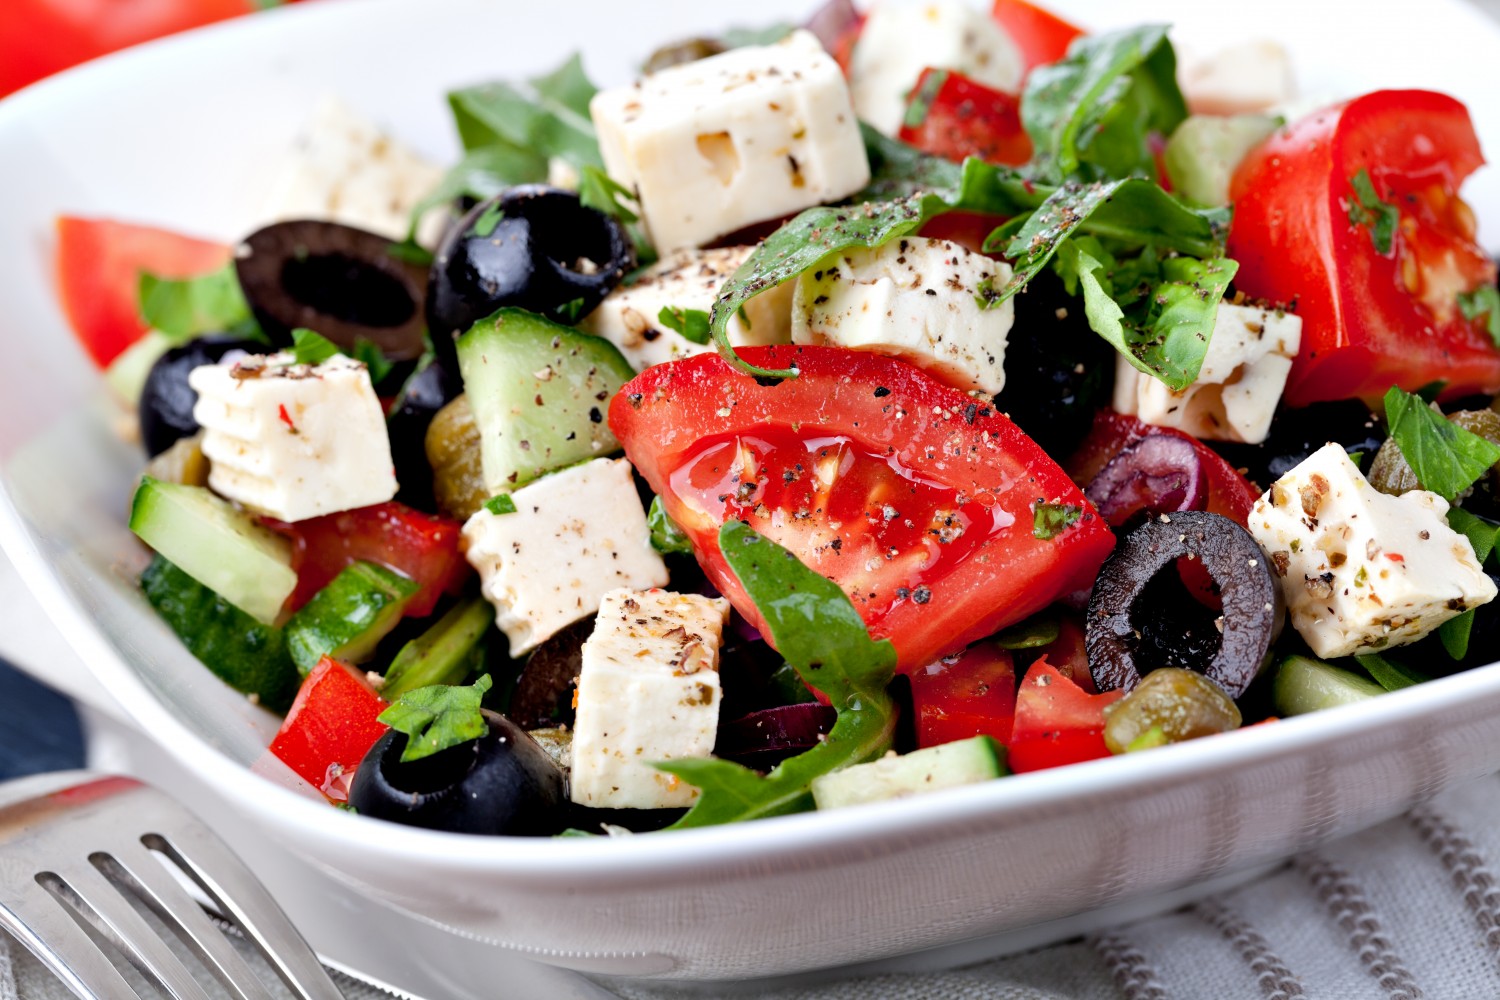 Классический рецепт греческого салата – самый простой и вкусный способ приготовления